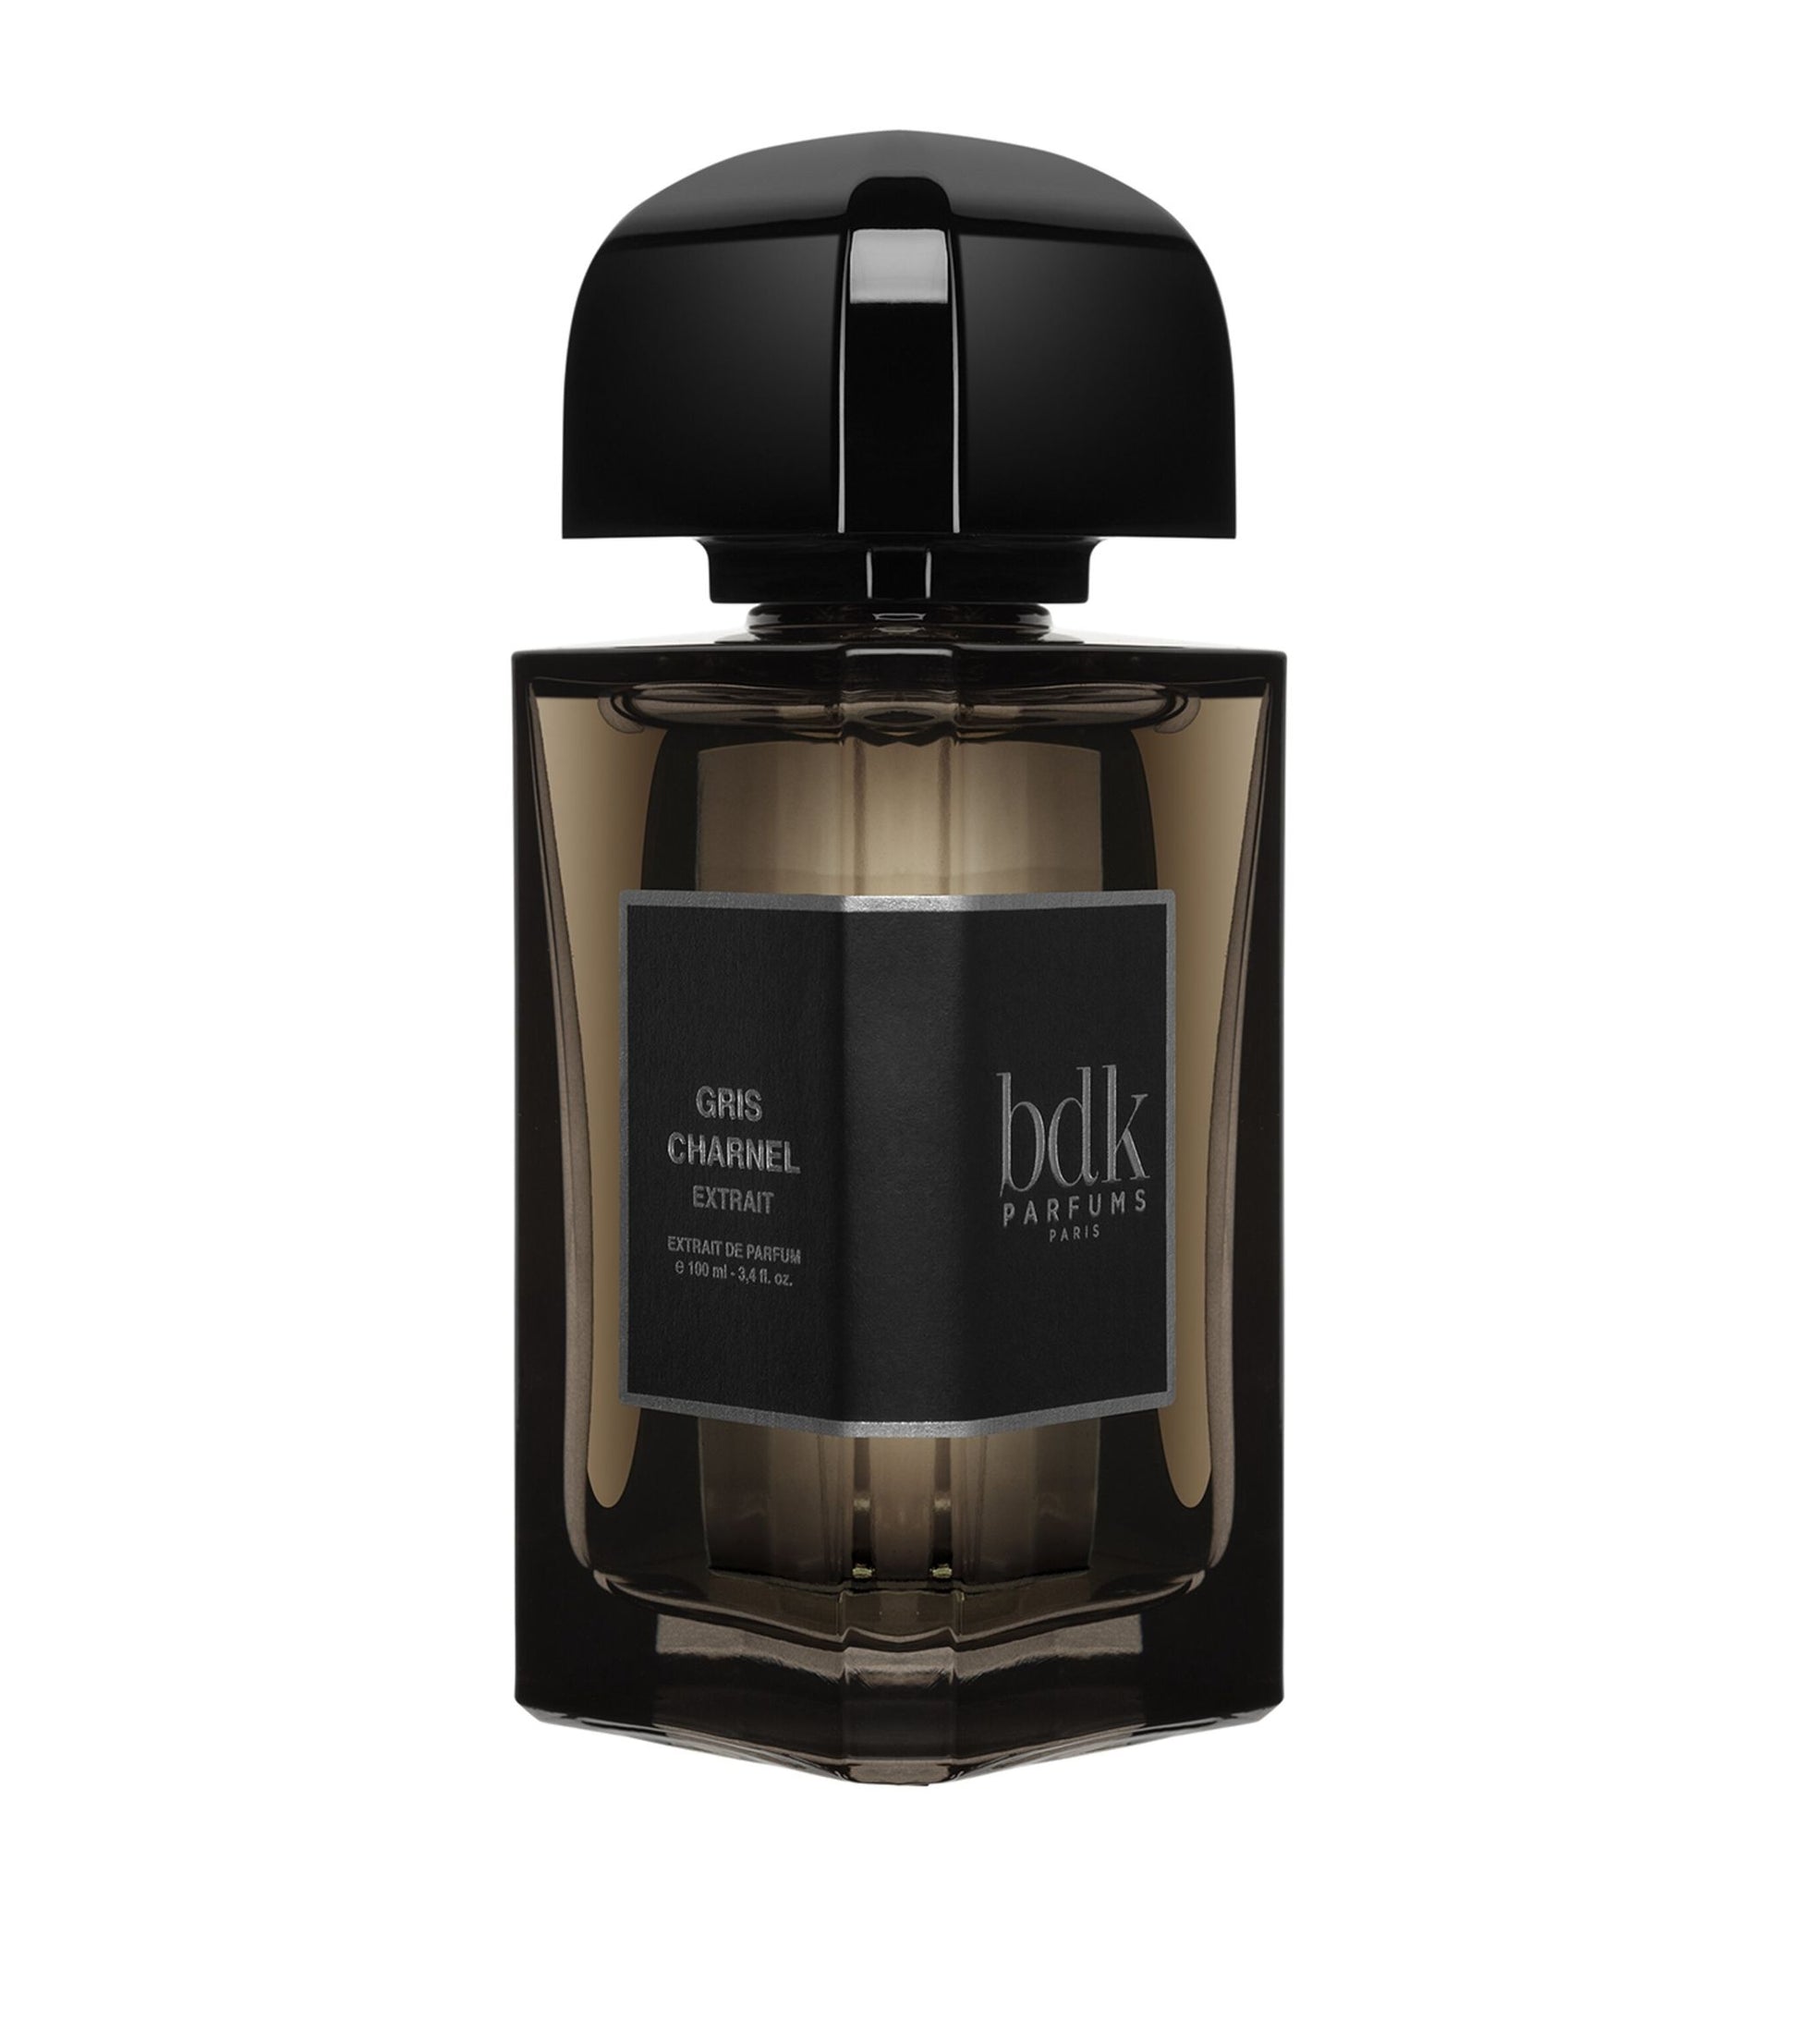 BDK Parfums Gris Charnel Extrait BDK Parfums